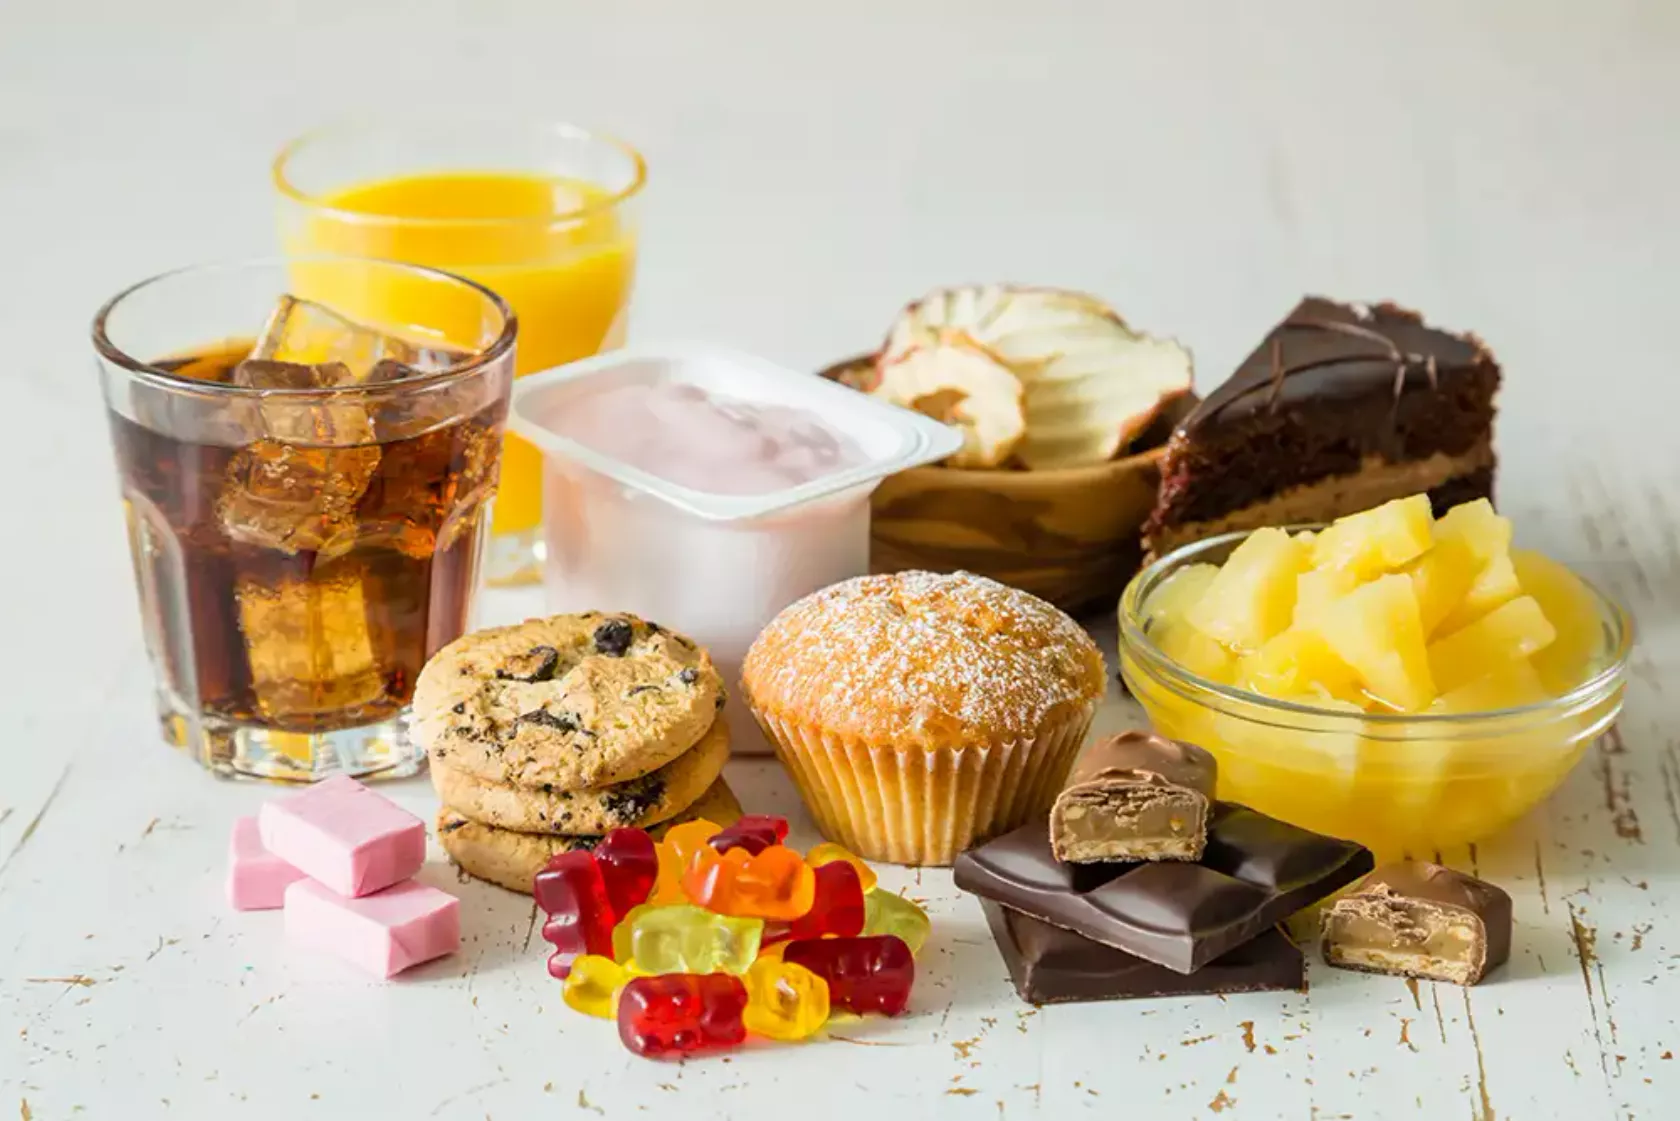 Anordnung von stark zuckerhaltigen Lebensmitteln wie Gummibärchen, Kuchen, Dosenobst, Limonade, Schokolade.